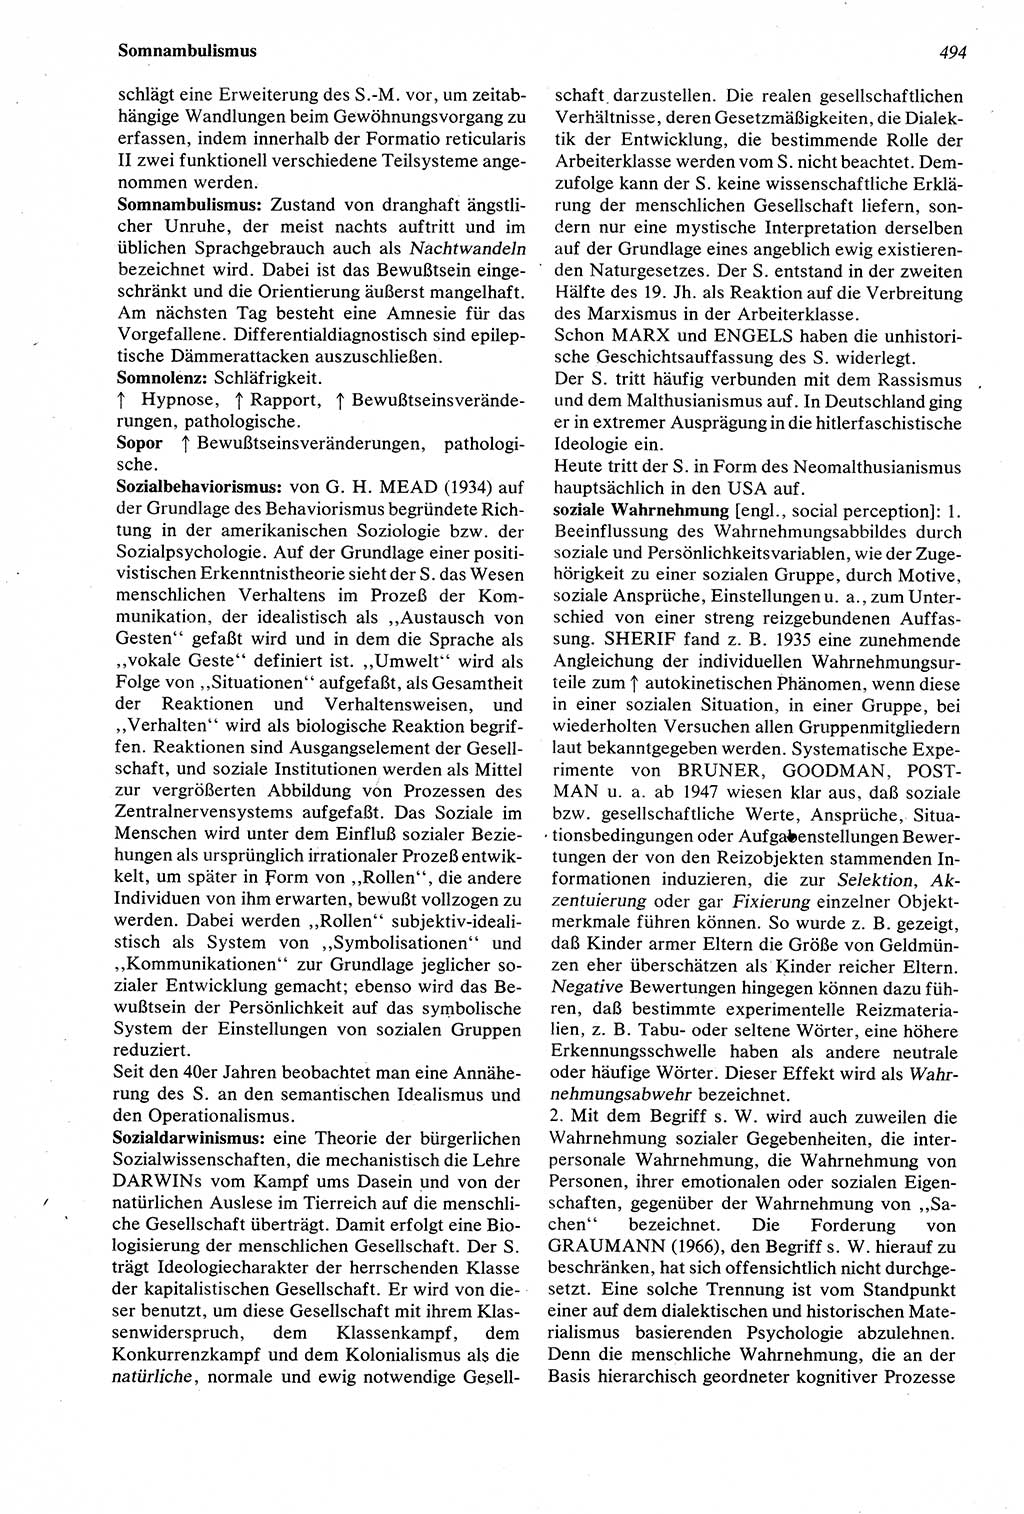 Wörterbuch der Psychologie [Deutsche Demokratische Republik (DDR)] 1976, Seite 494 (Wb. Psych. DDR 1976, S. 494)